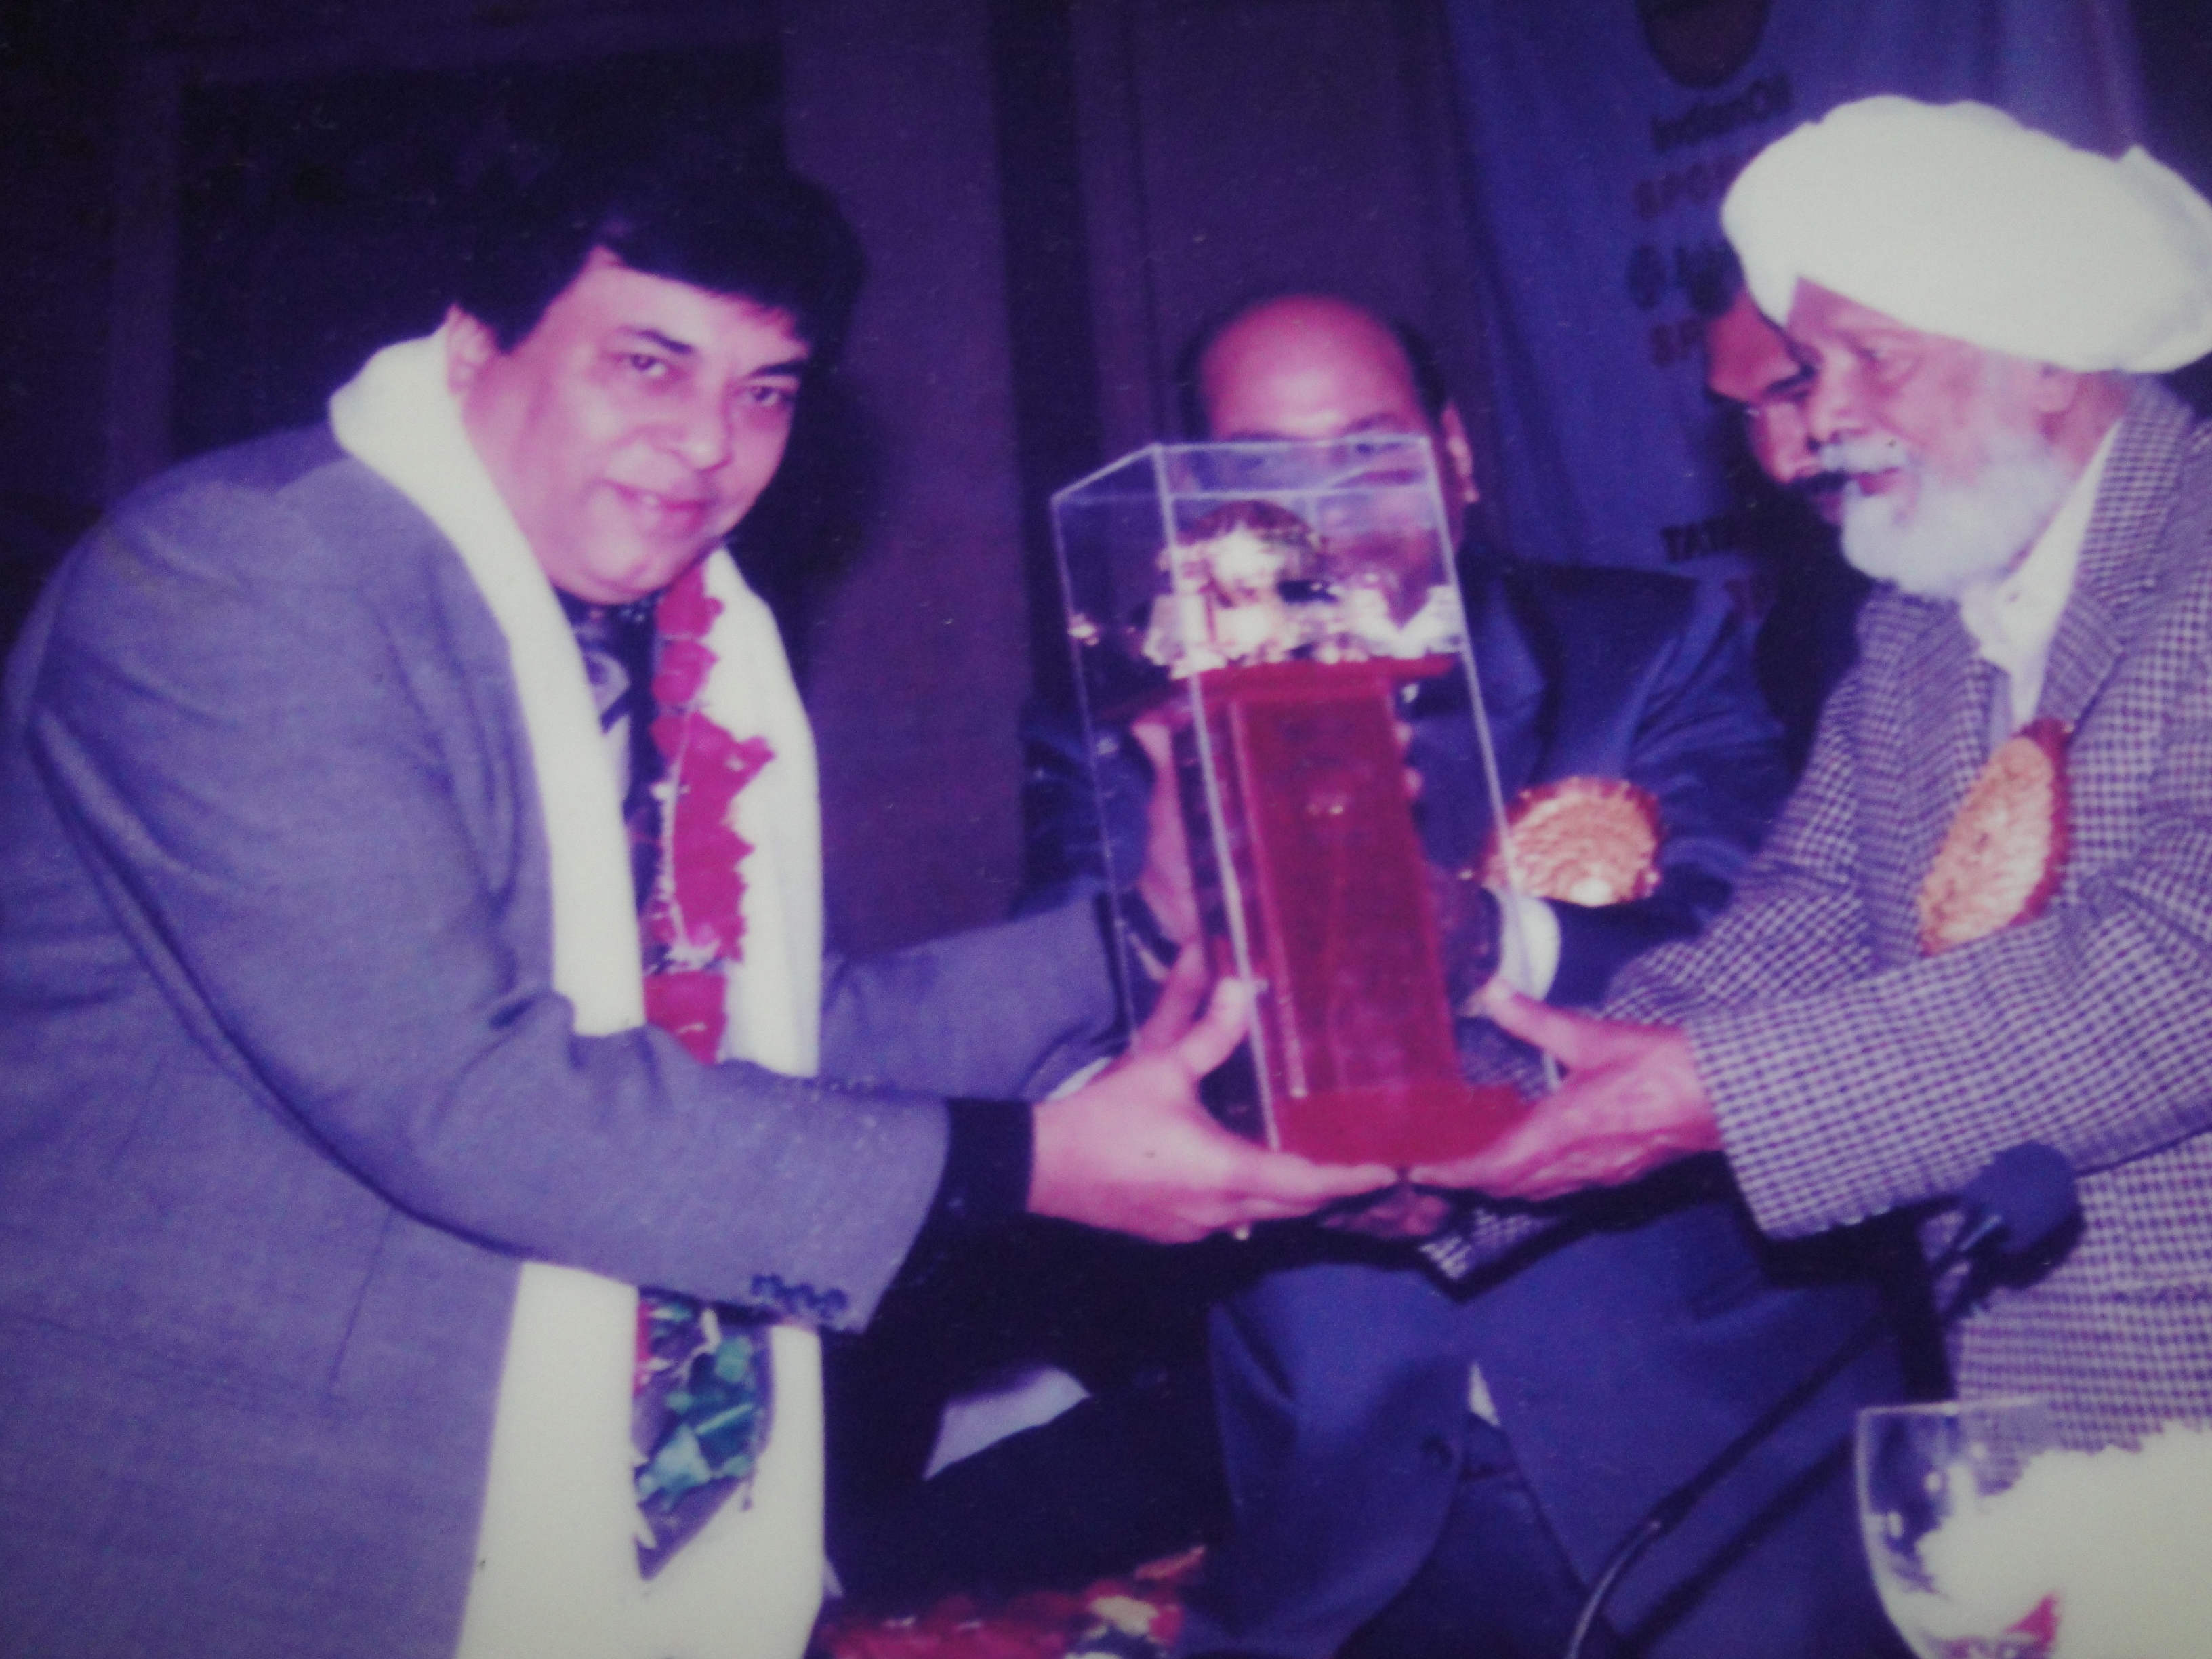 Harkishan Singh Surjeet Giving Award To Someone